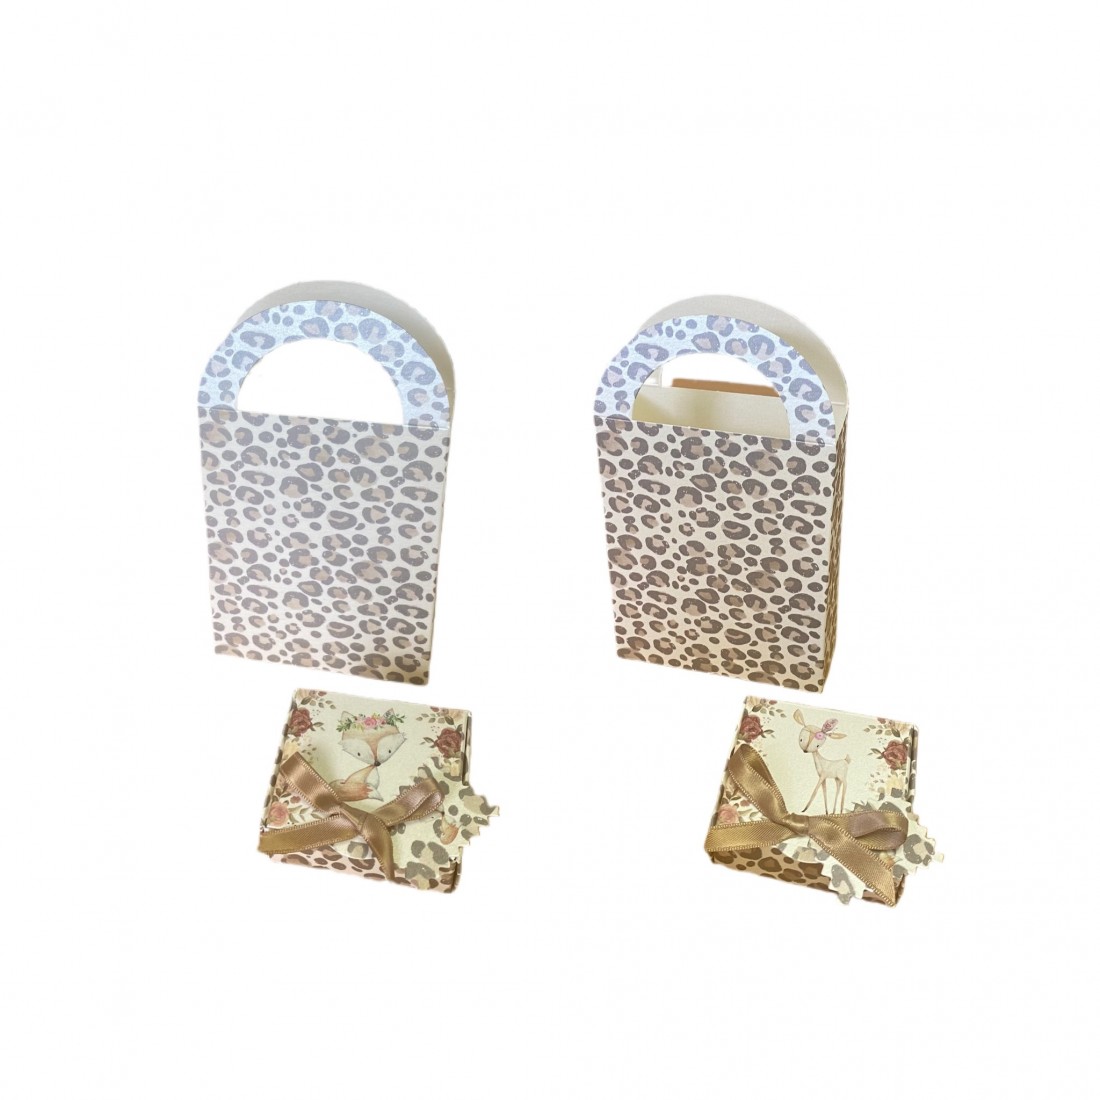 Kit Caja + Bolsa Leopard Sweet Animals